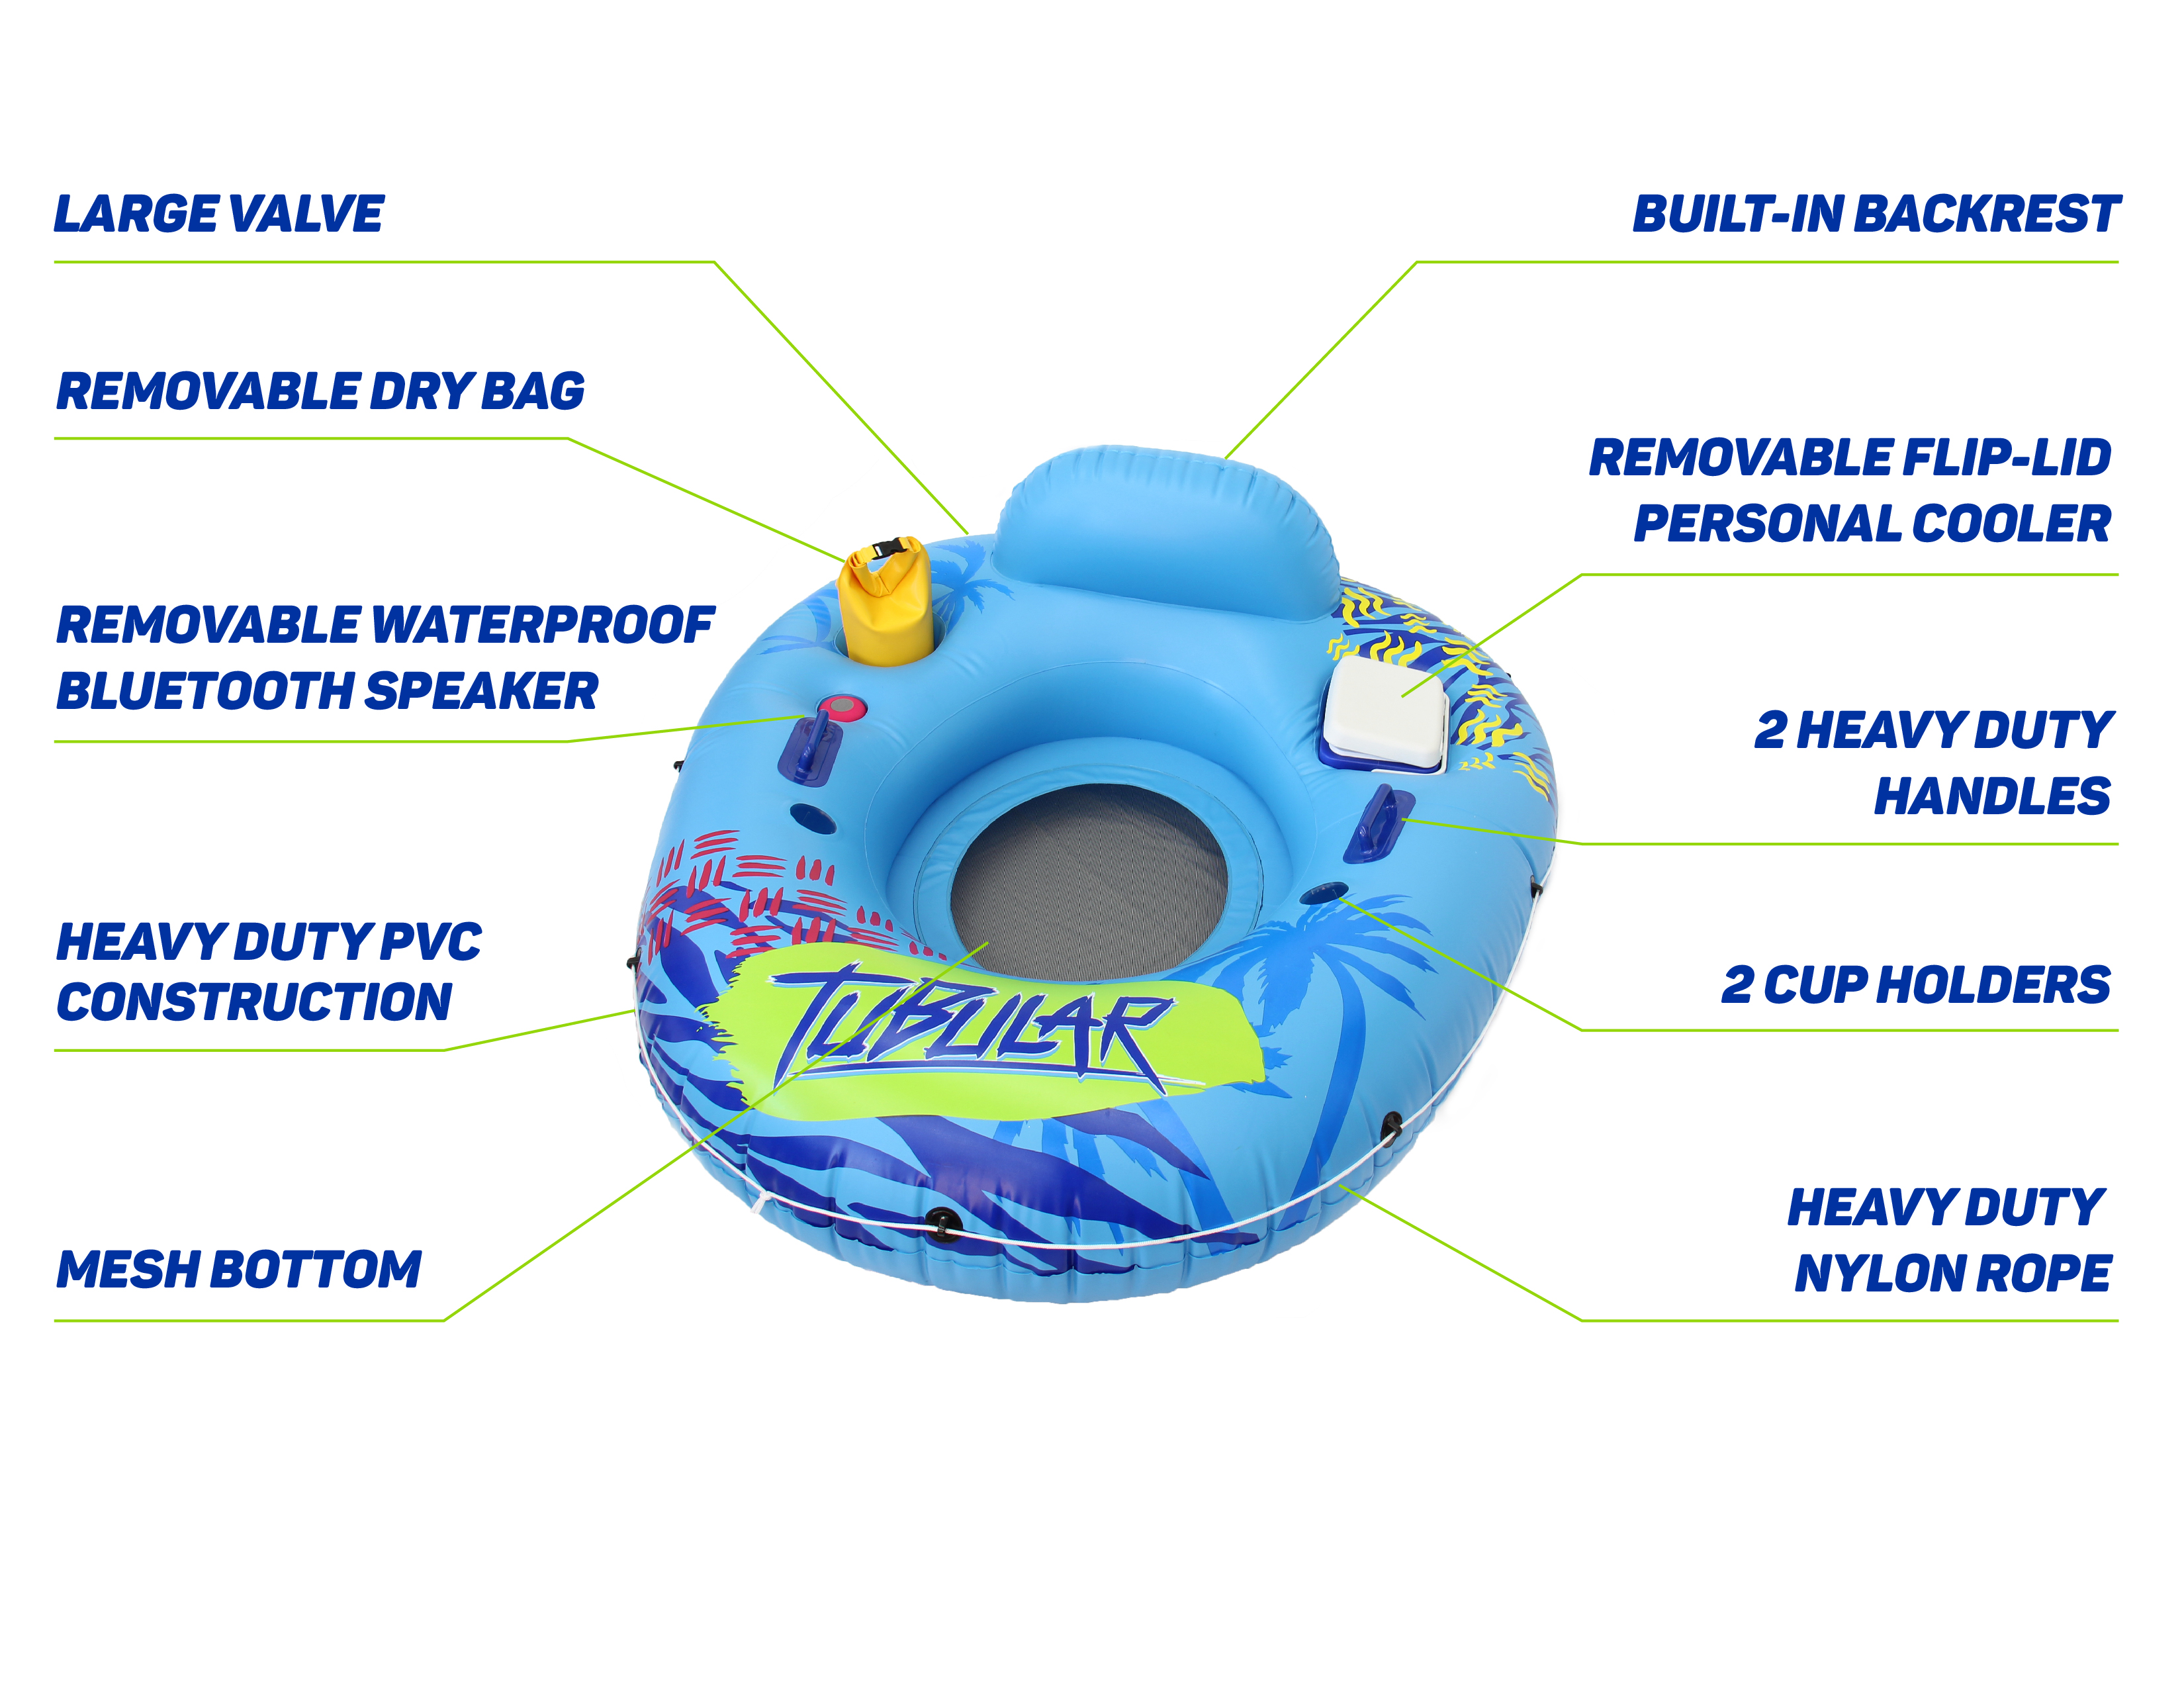 Tubular Tube's Features